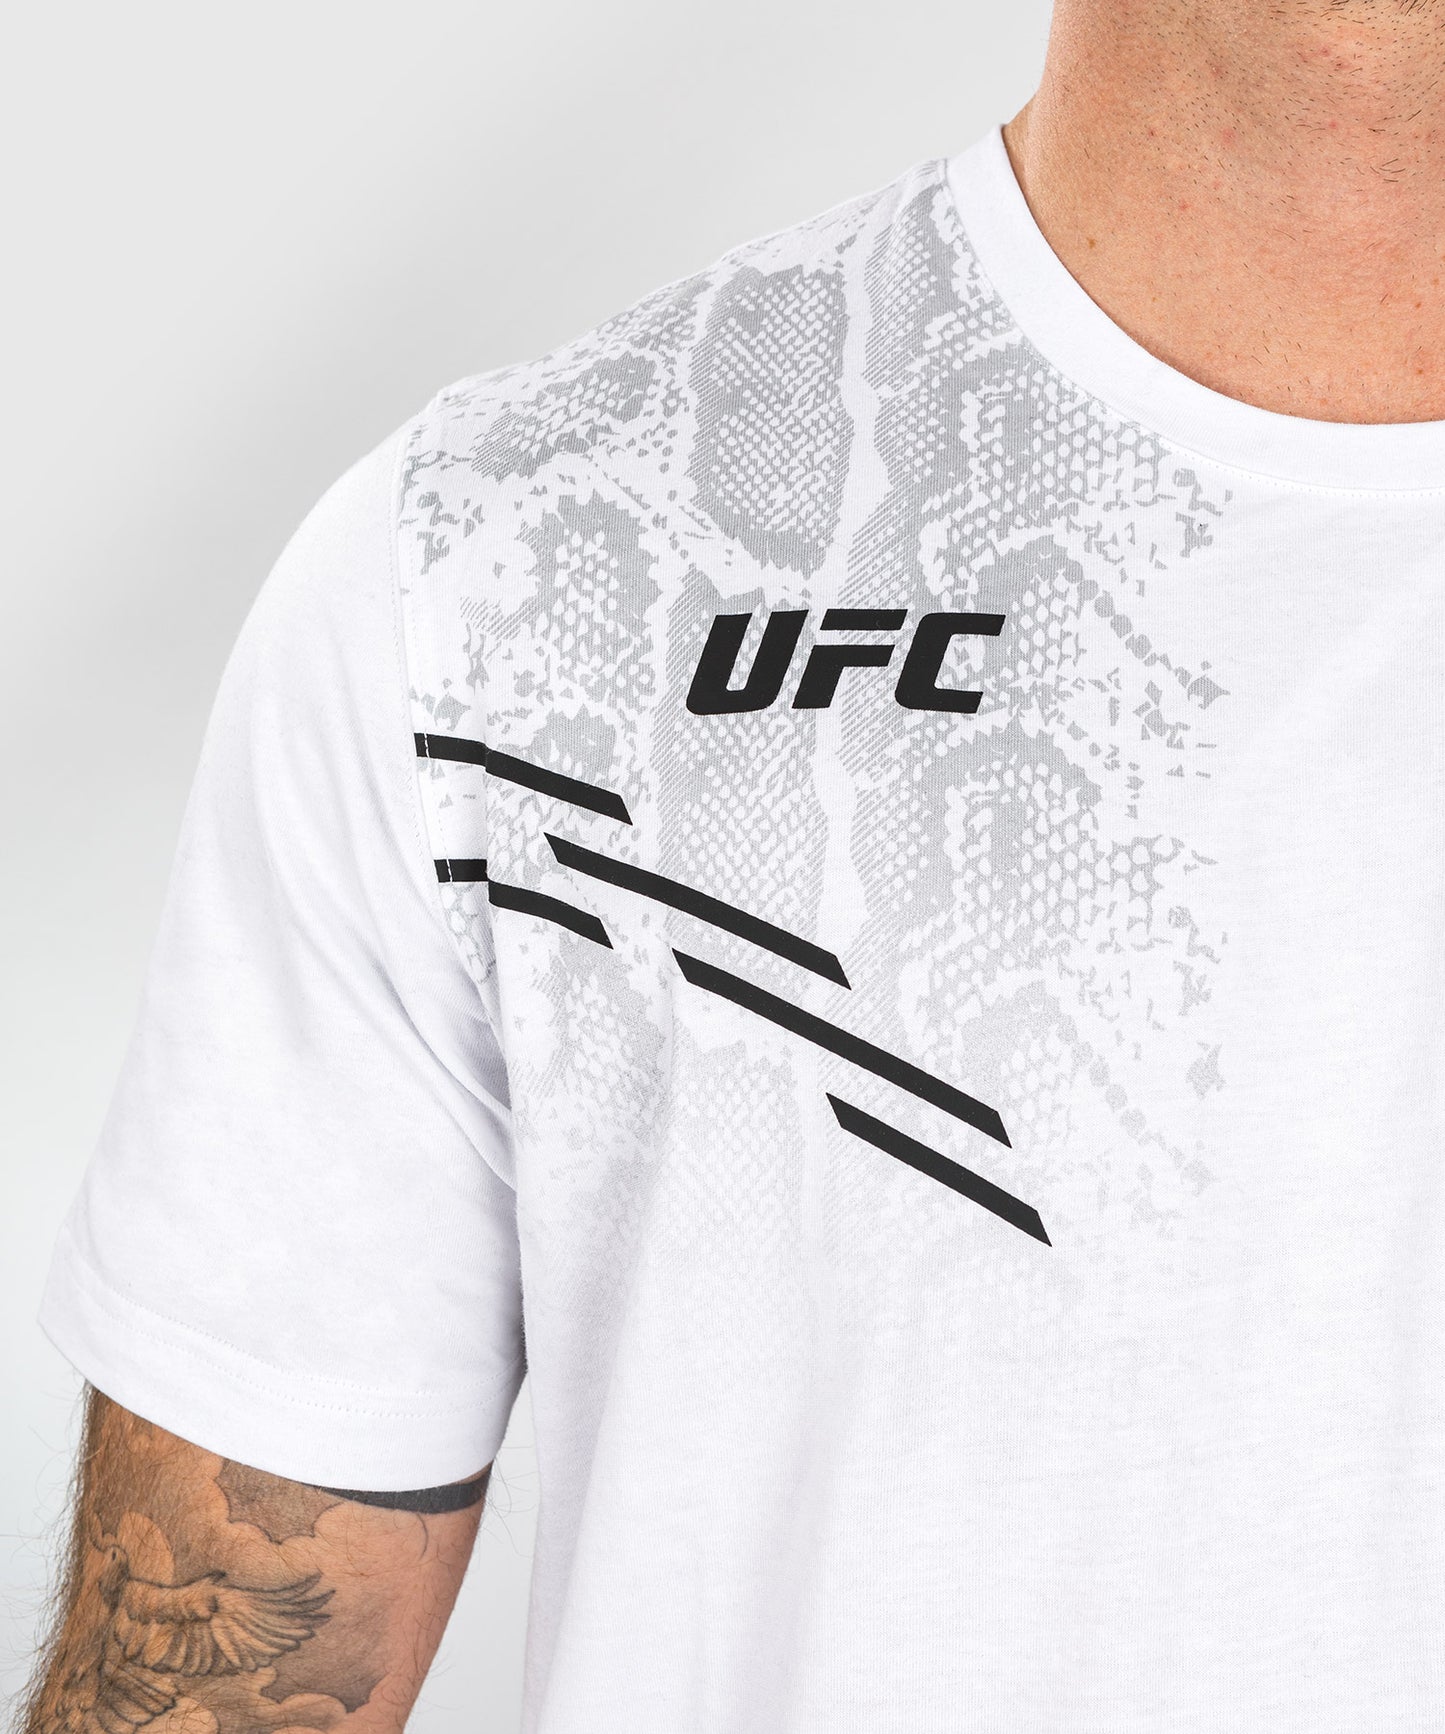 UFC Adrenaline by Venum Replica Camiseta de manga corta para Hombre - Blanca